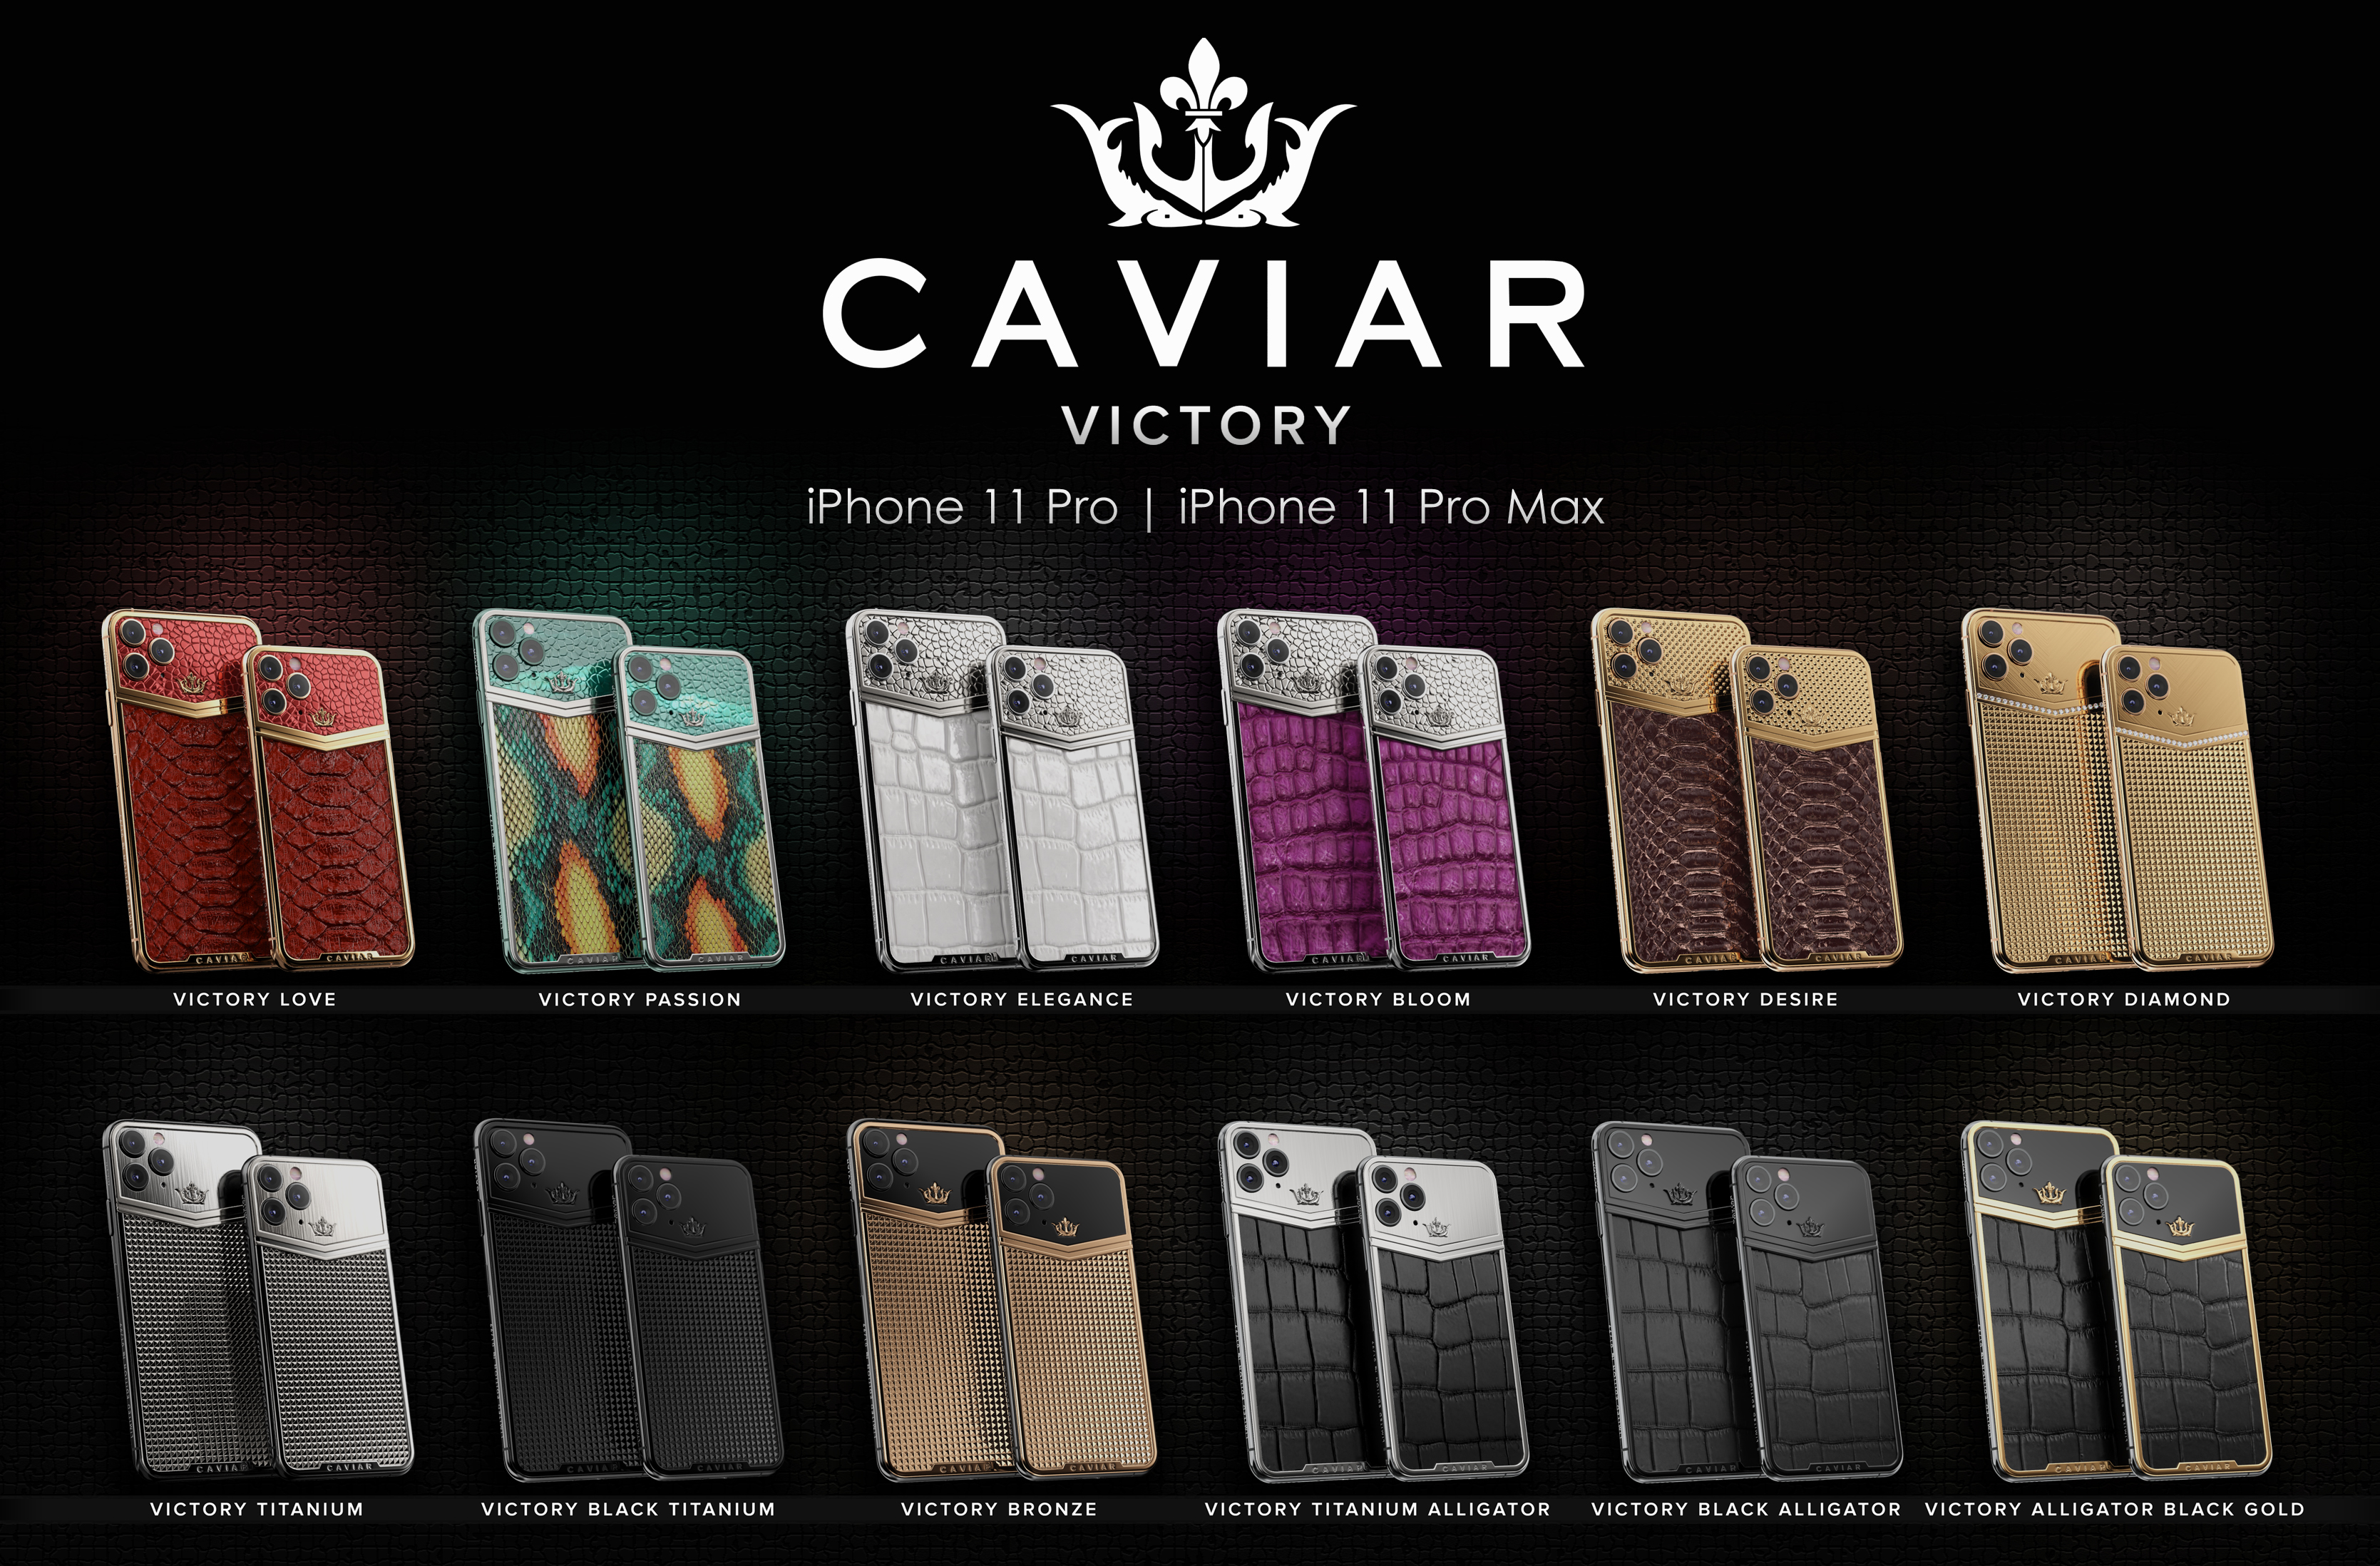 Caviar iphone 11 Pro Victory Diamond